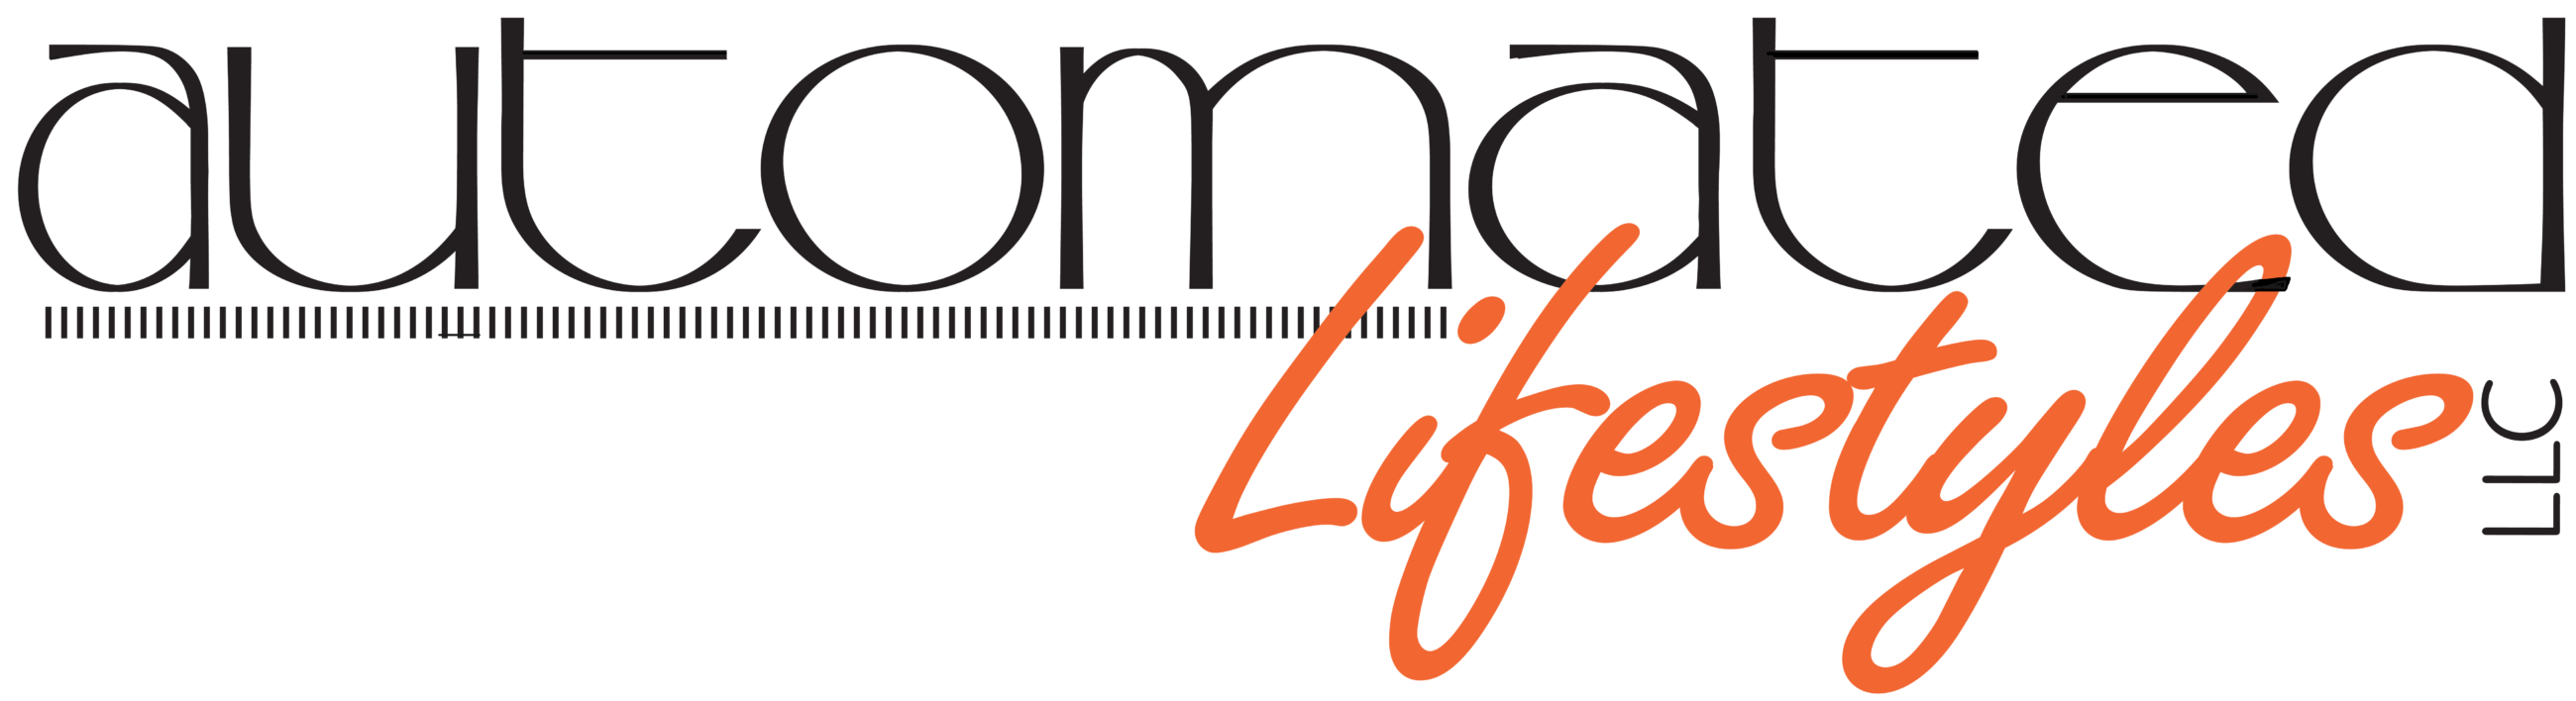 Automated lifestyles logo